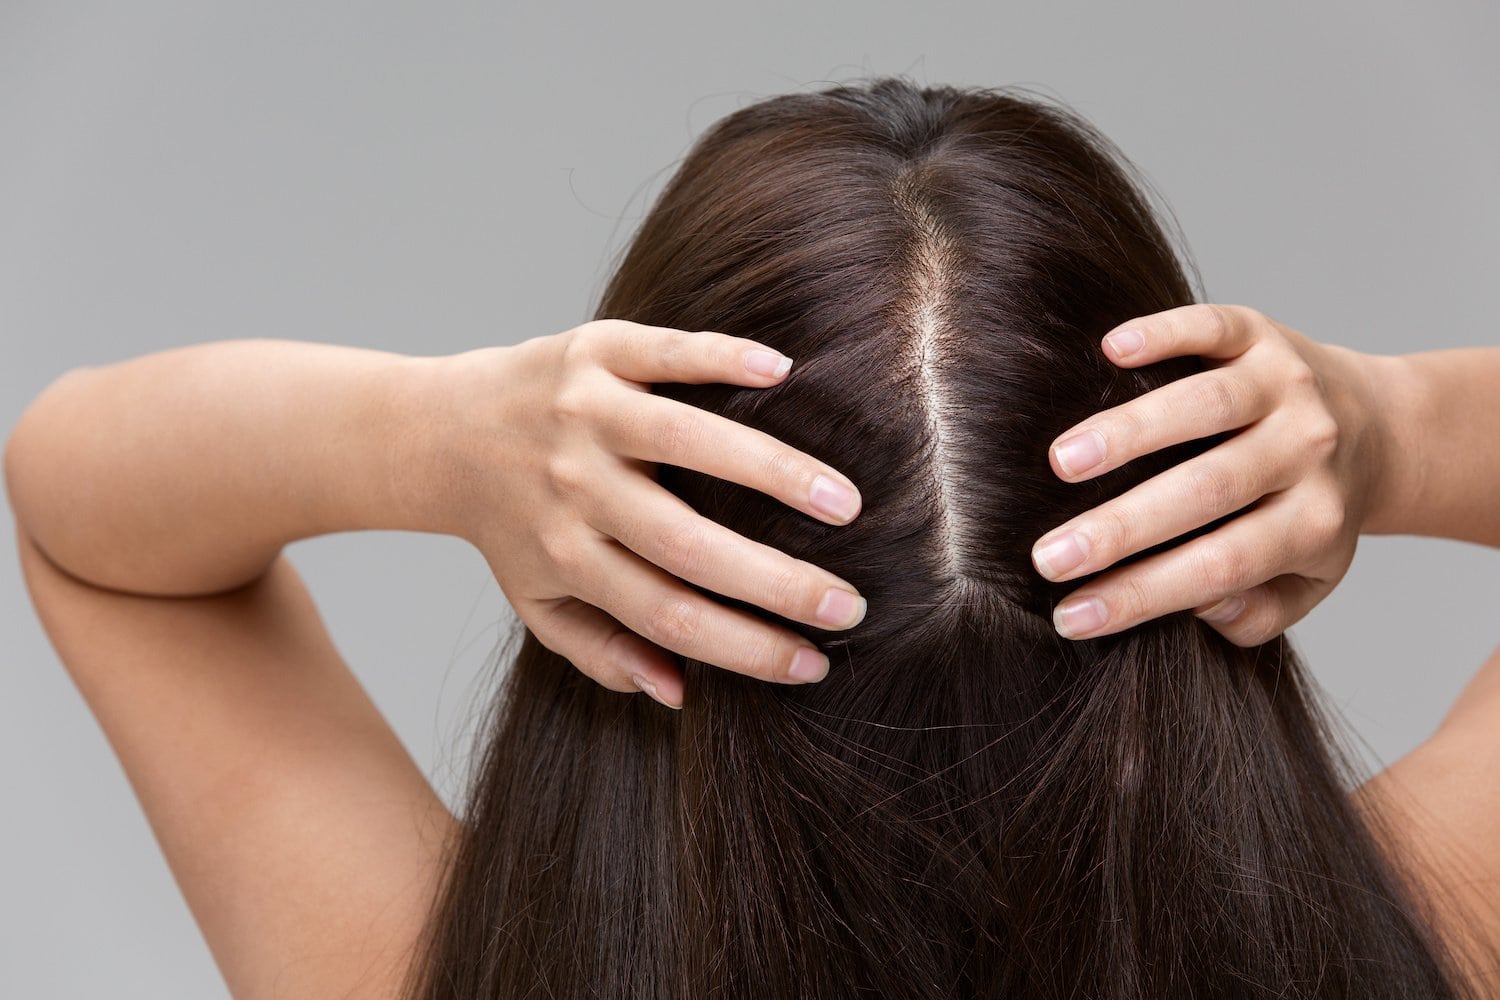 ⭐ Tuần hoàn máu có liên quan gì đến vấn đề rụng tóc? | Đẹp365